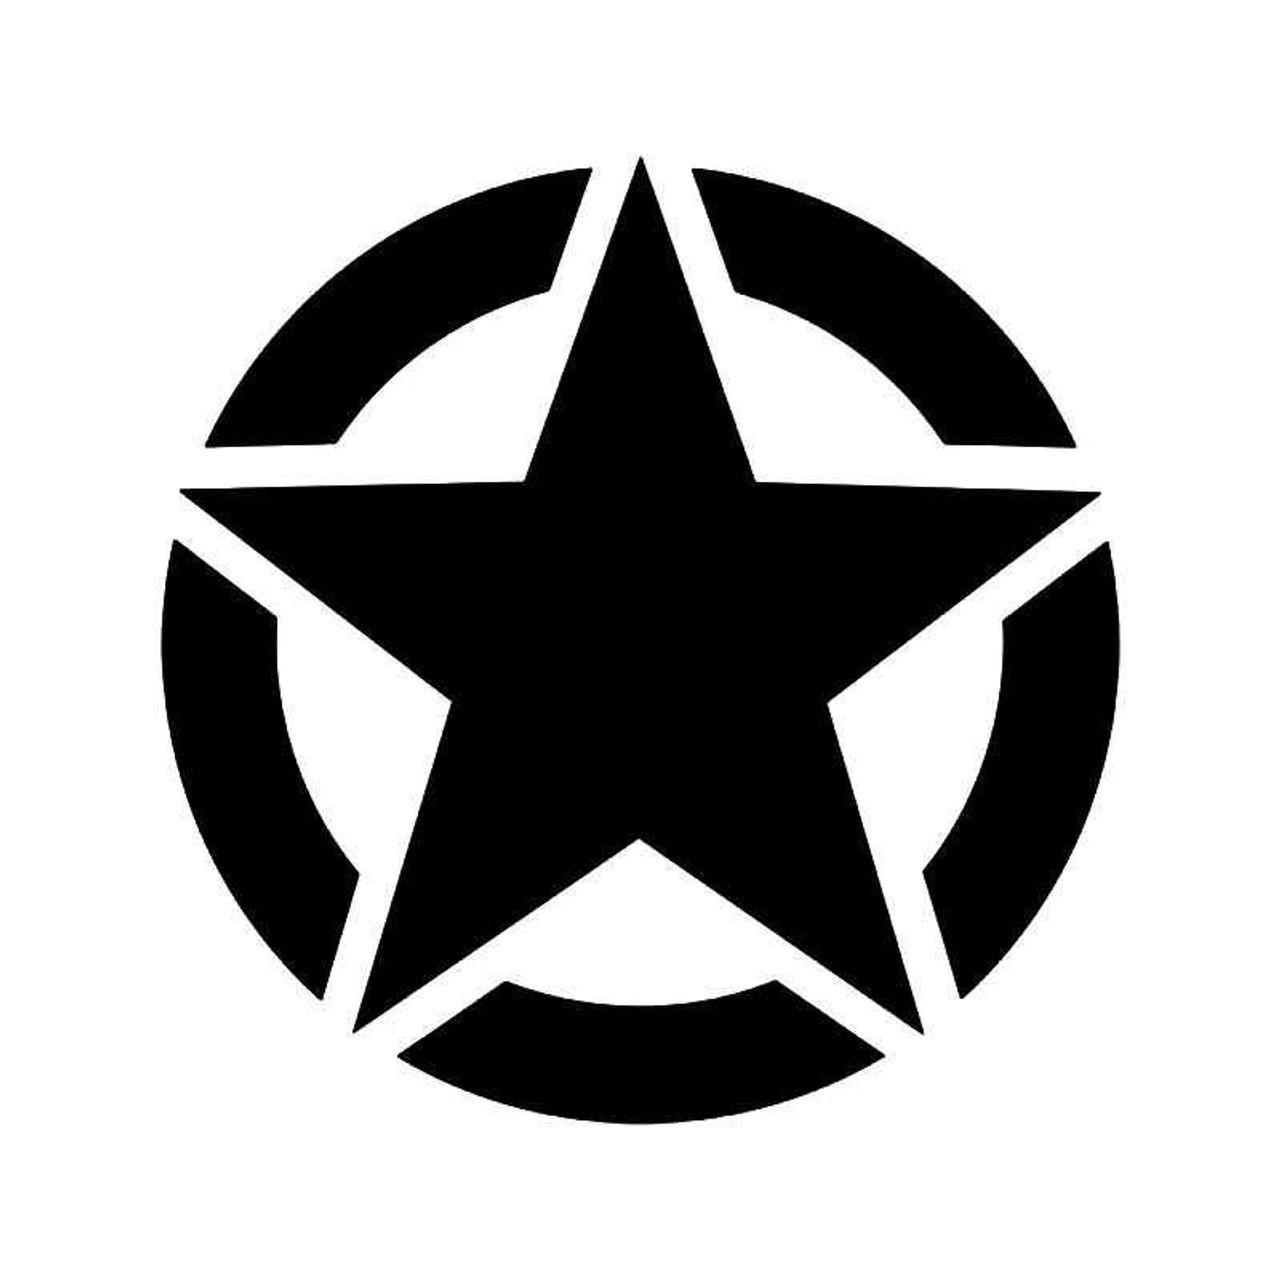 Ww2 Us Army Logo